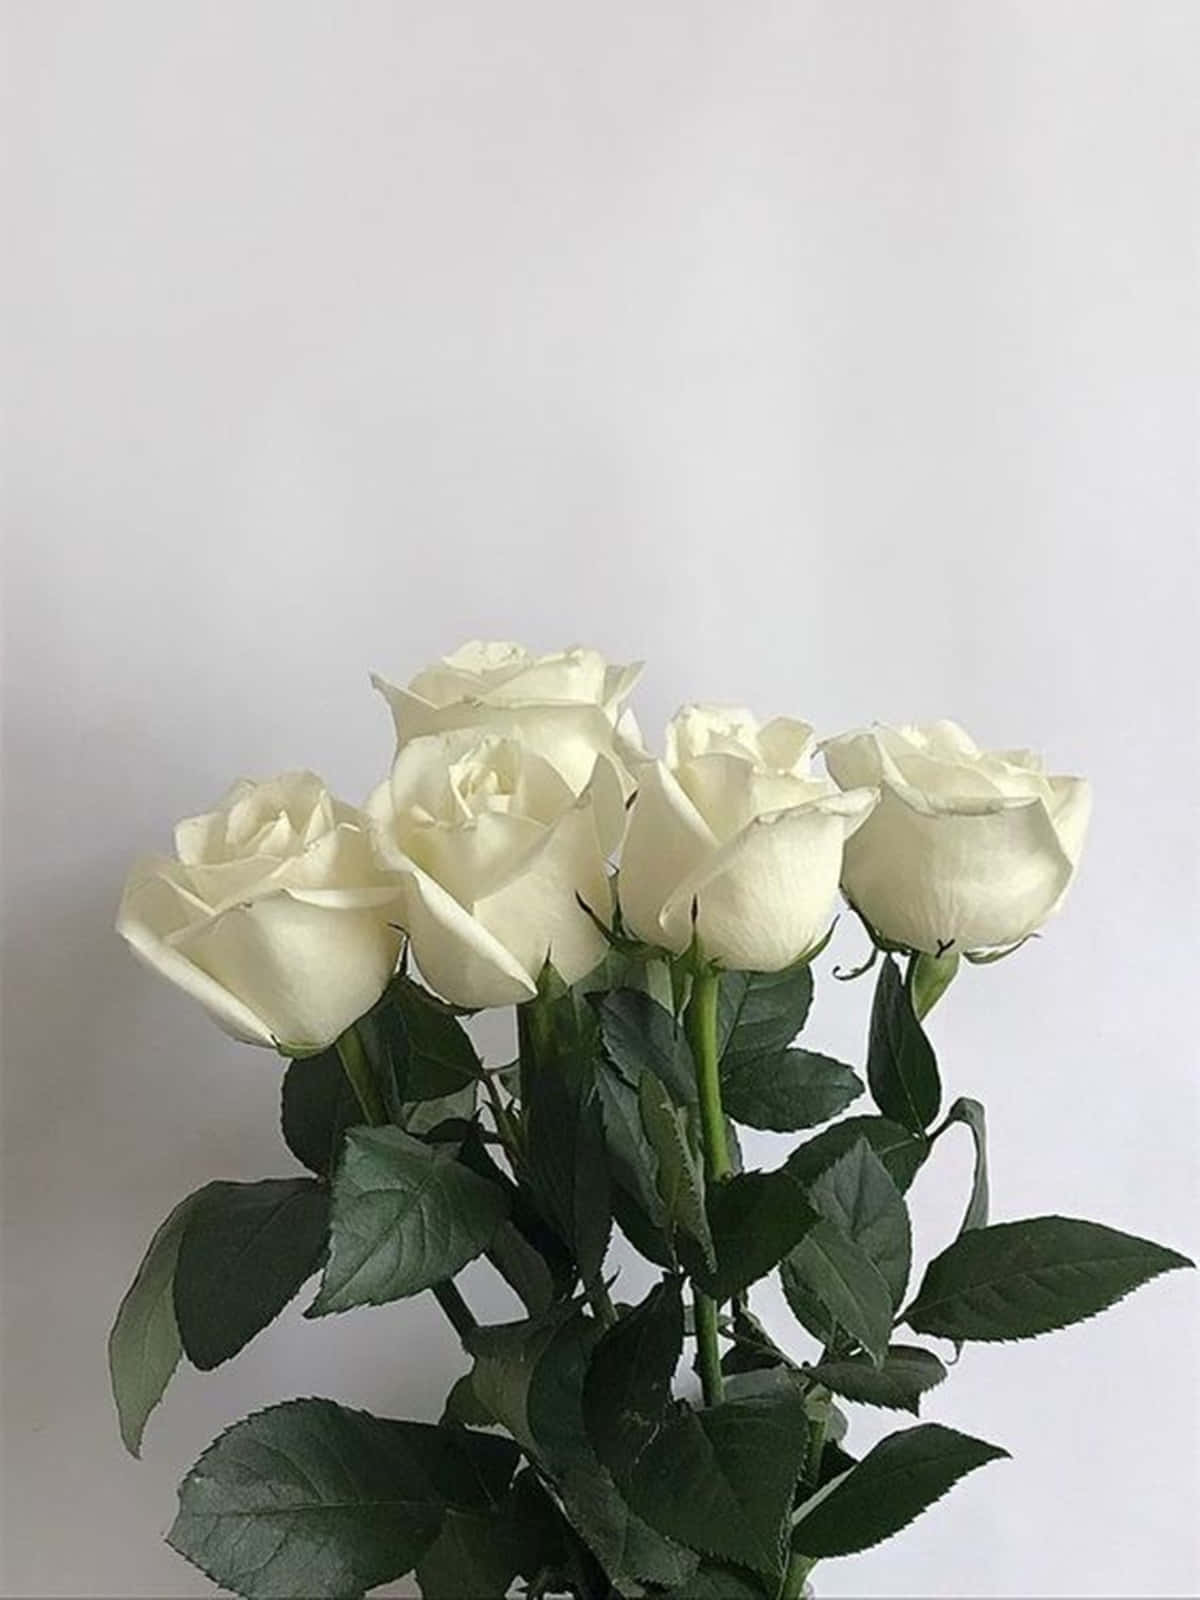 Umbelo Rose Branco Em Plena Floração. Papel de Parede